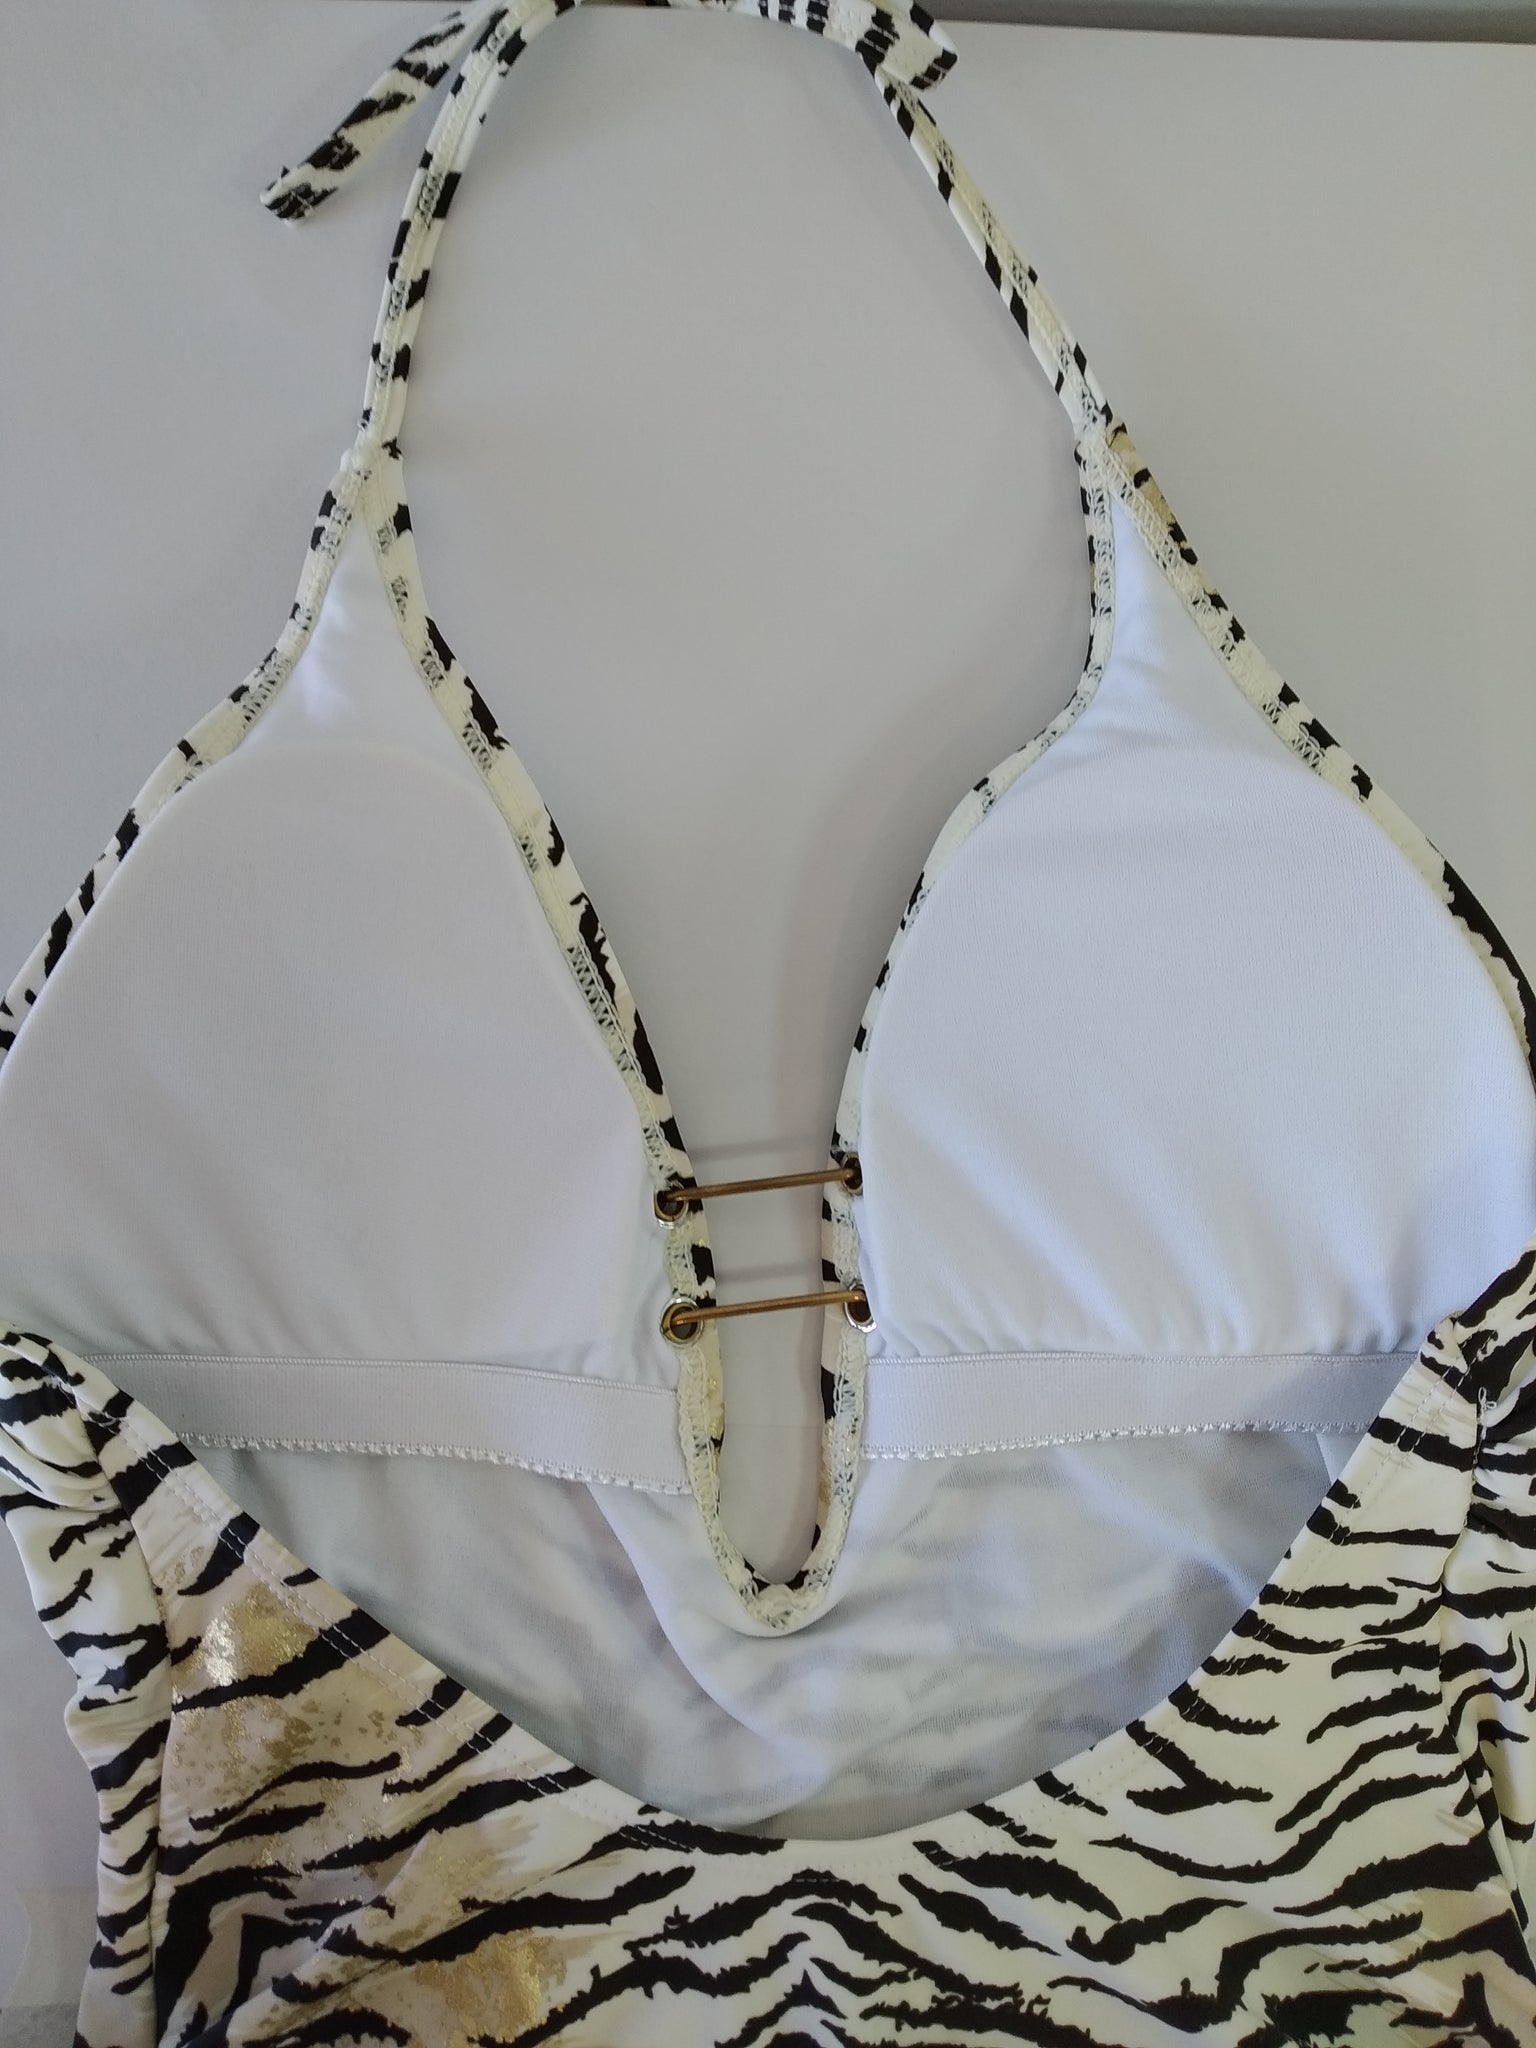 one piece swimsuit with tiger print,maillot de bain une piece imprime tigre,bañador de una pieza con estampado de tigre